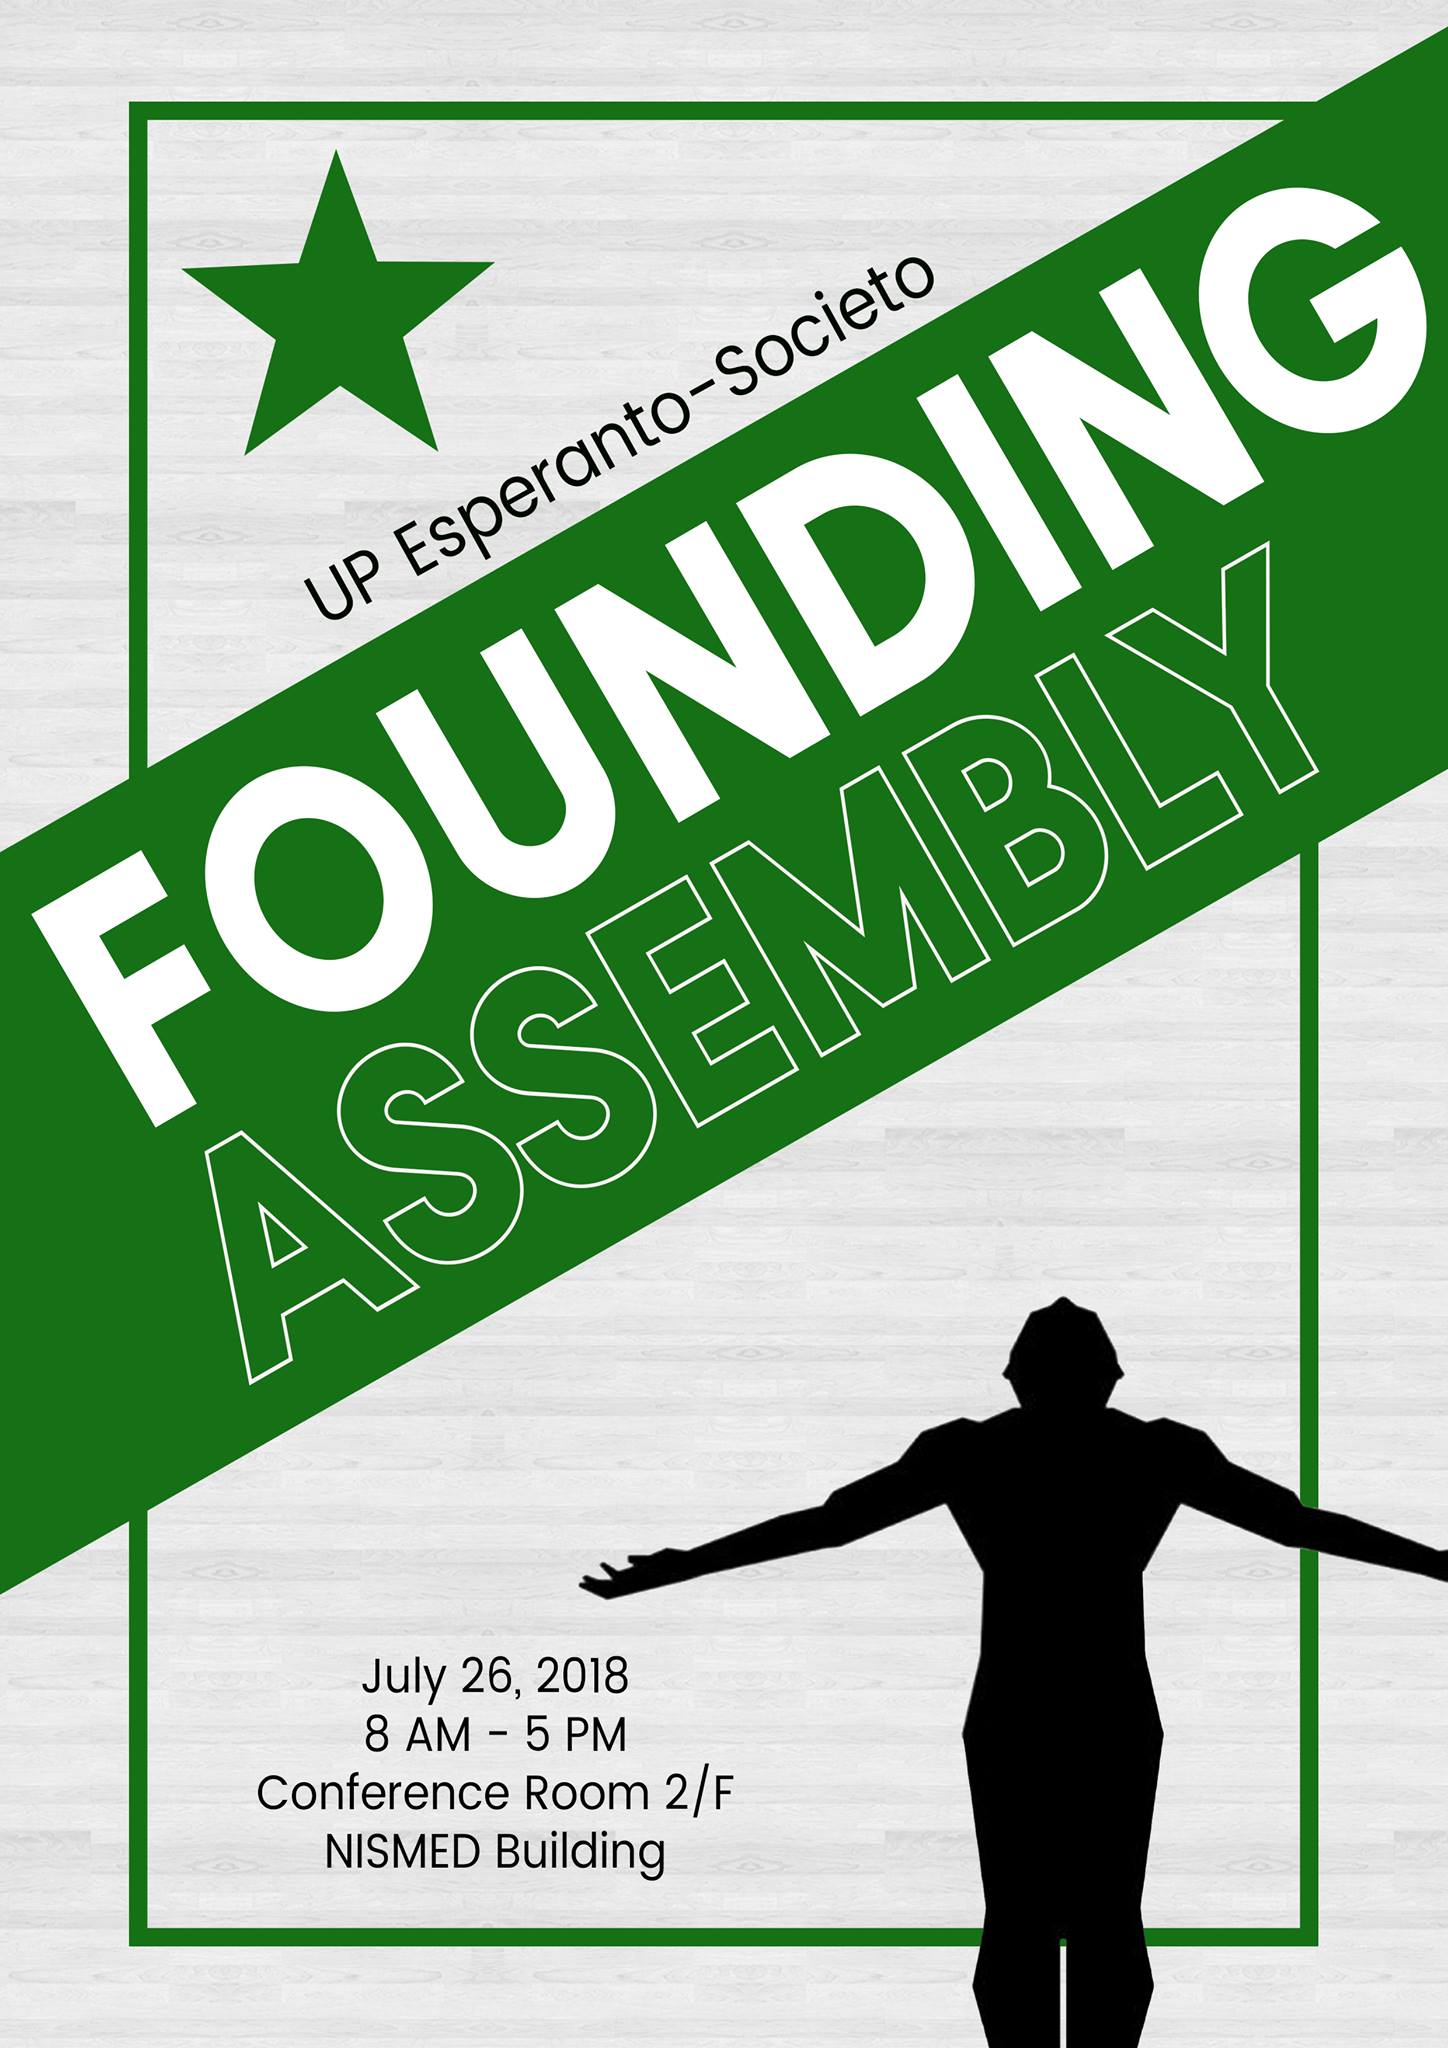 UP Esperas Founding Assembly